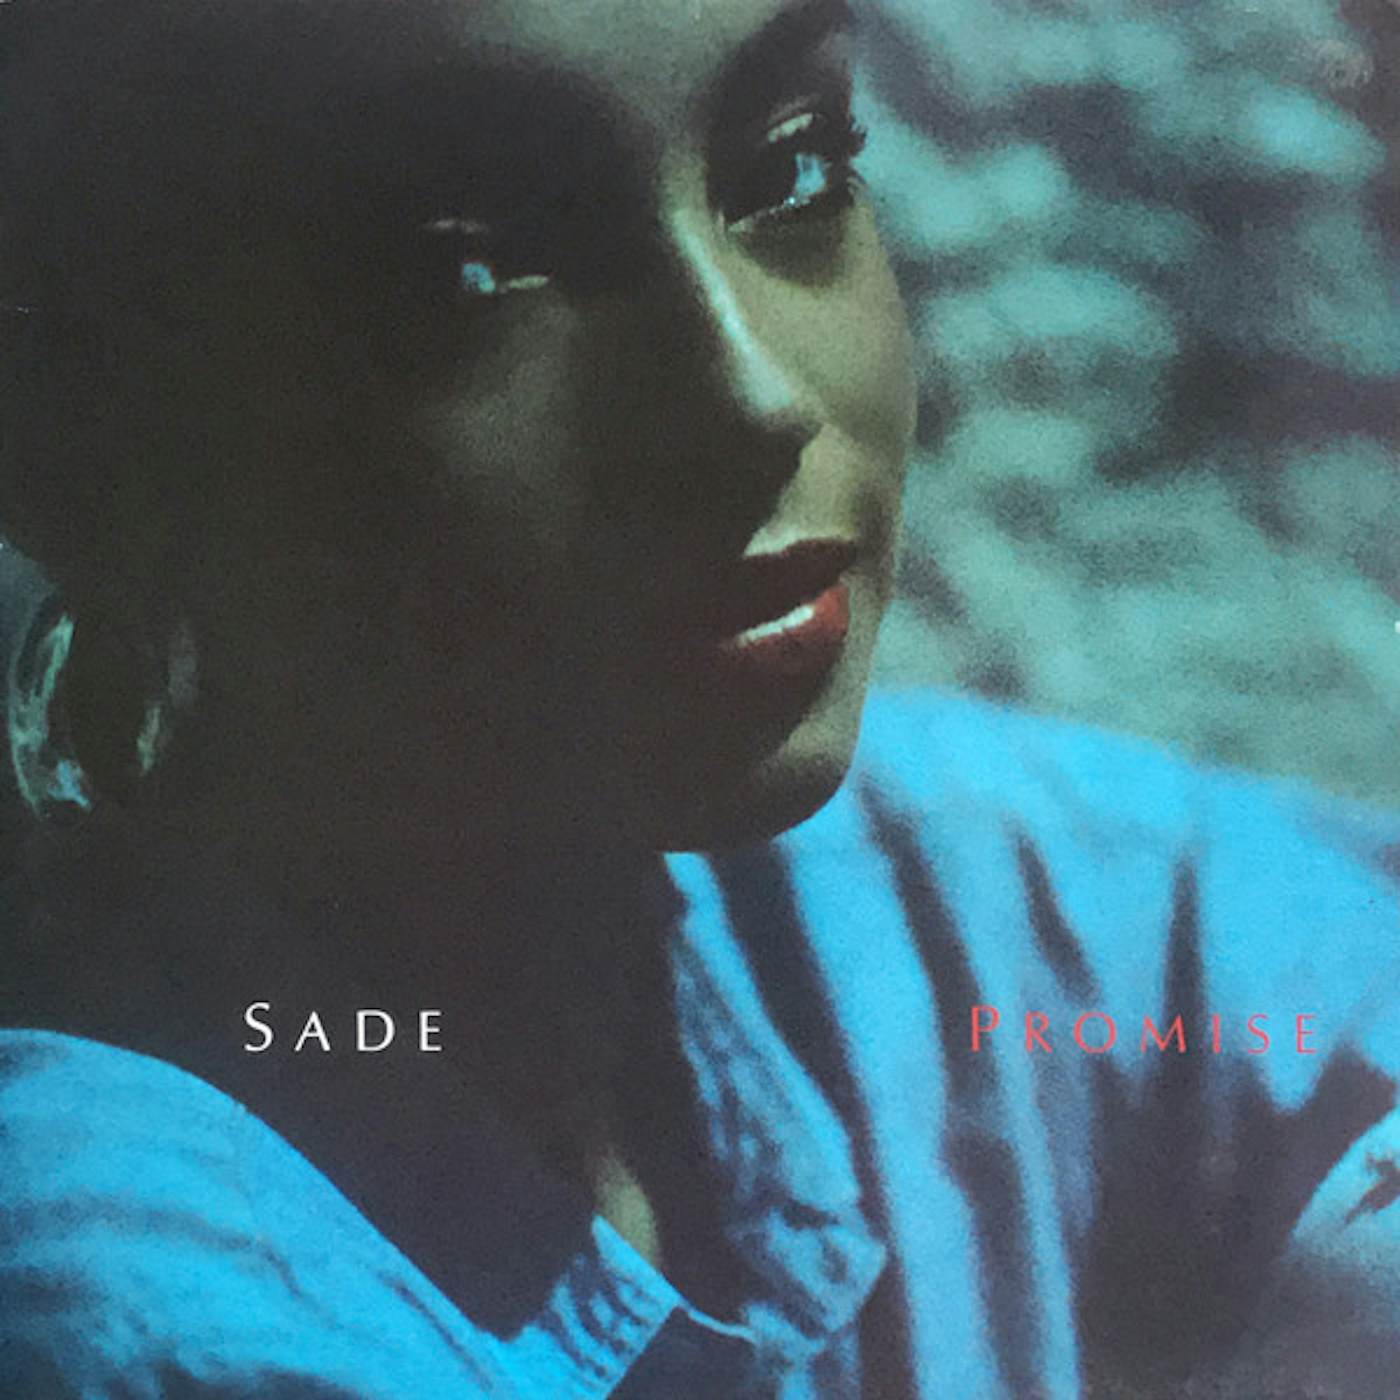 Sade PROMISE CD